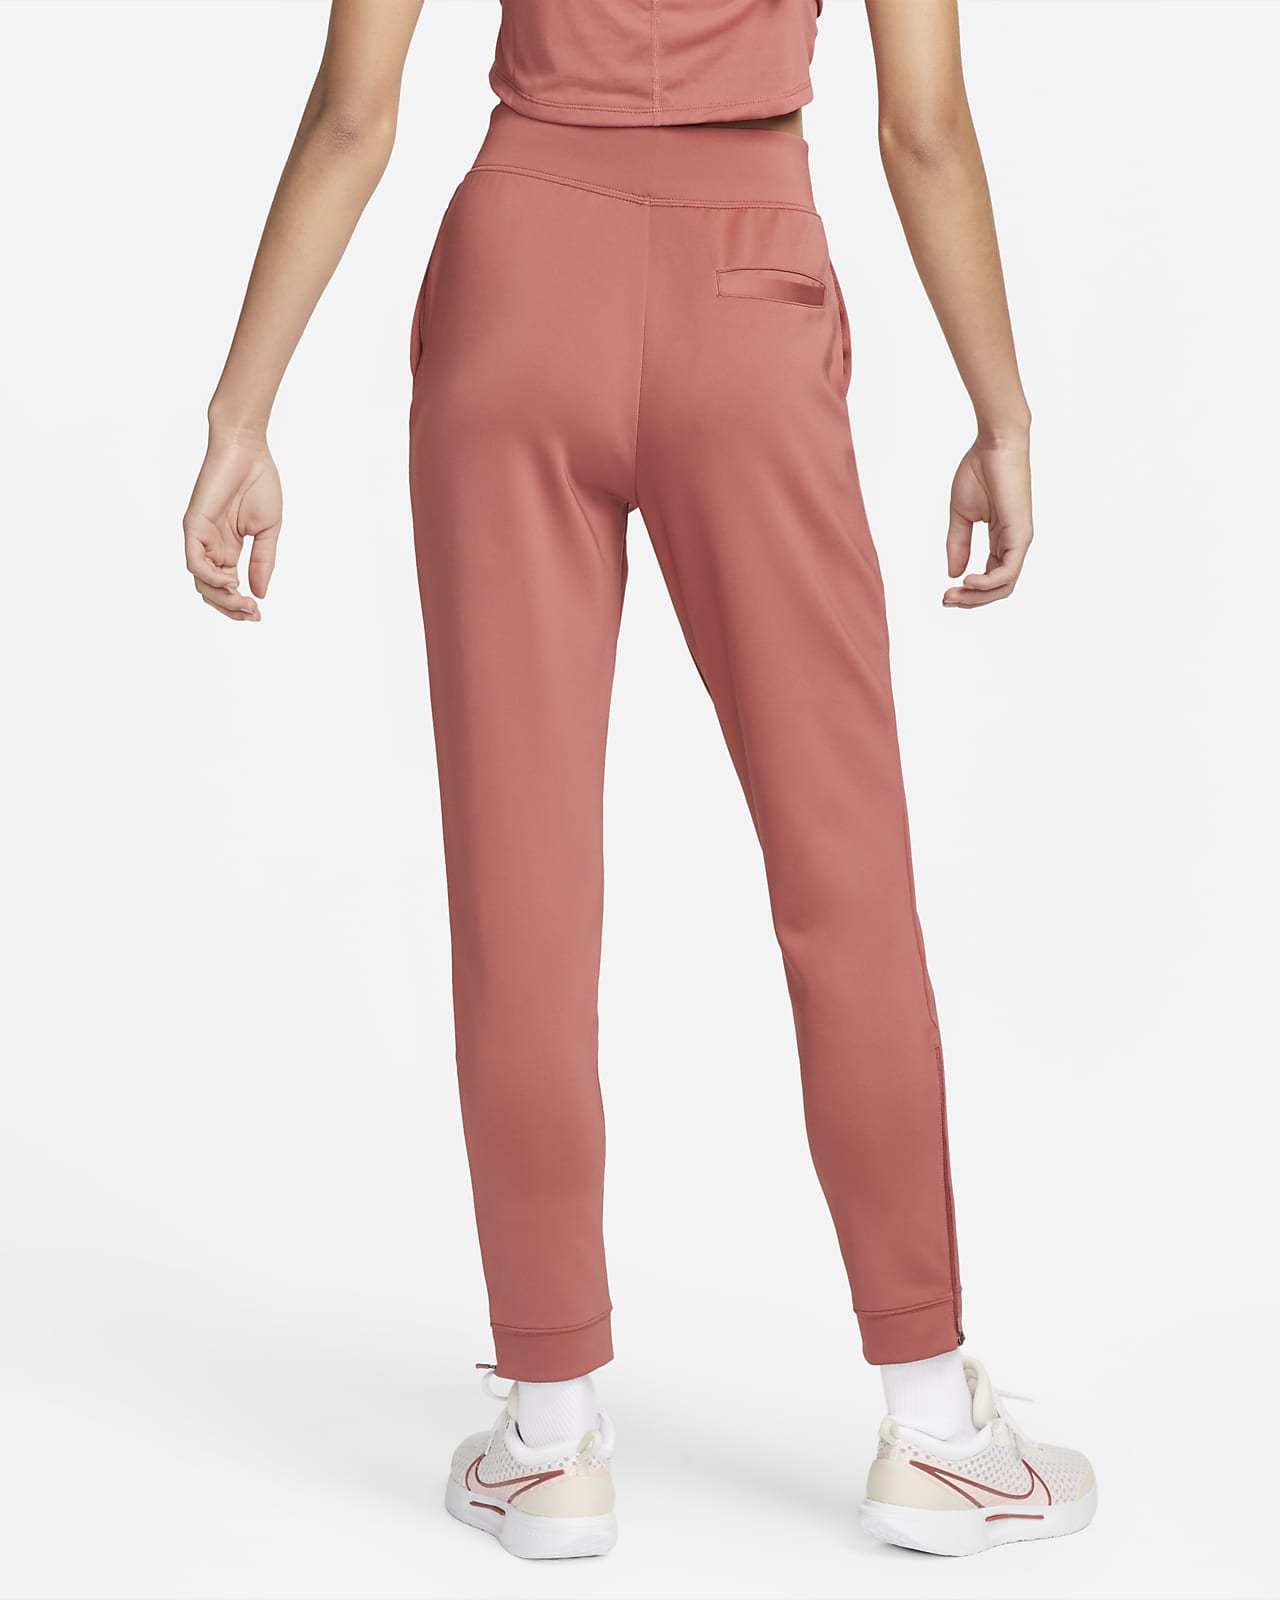 Pantalones tejidos tenis para mujer Nike.com